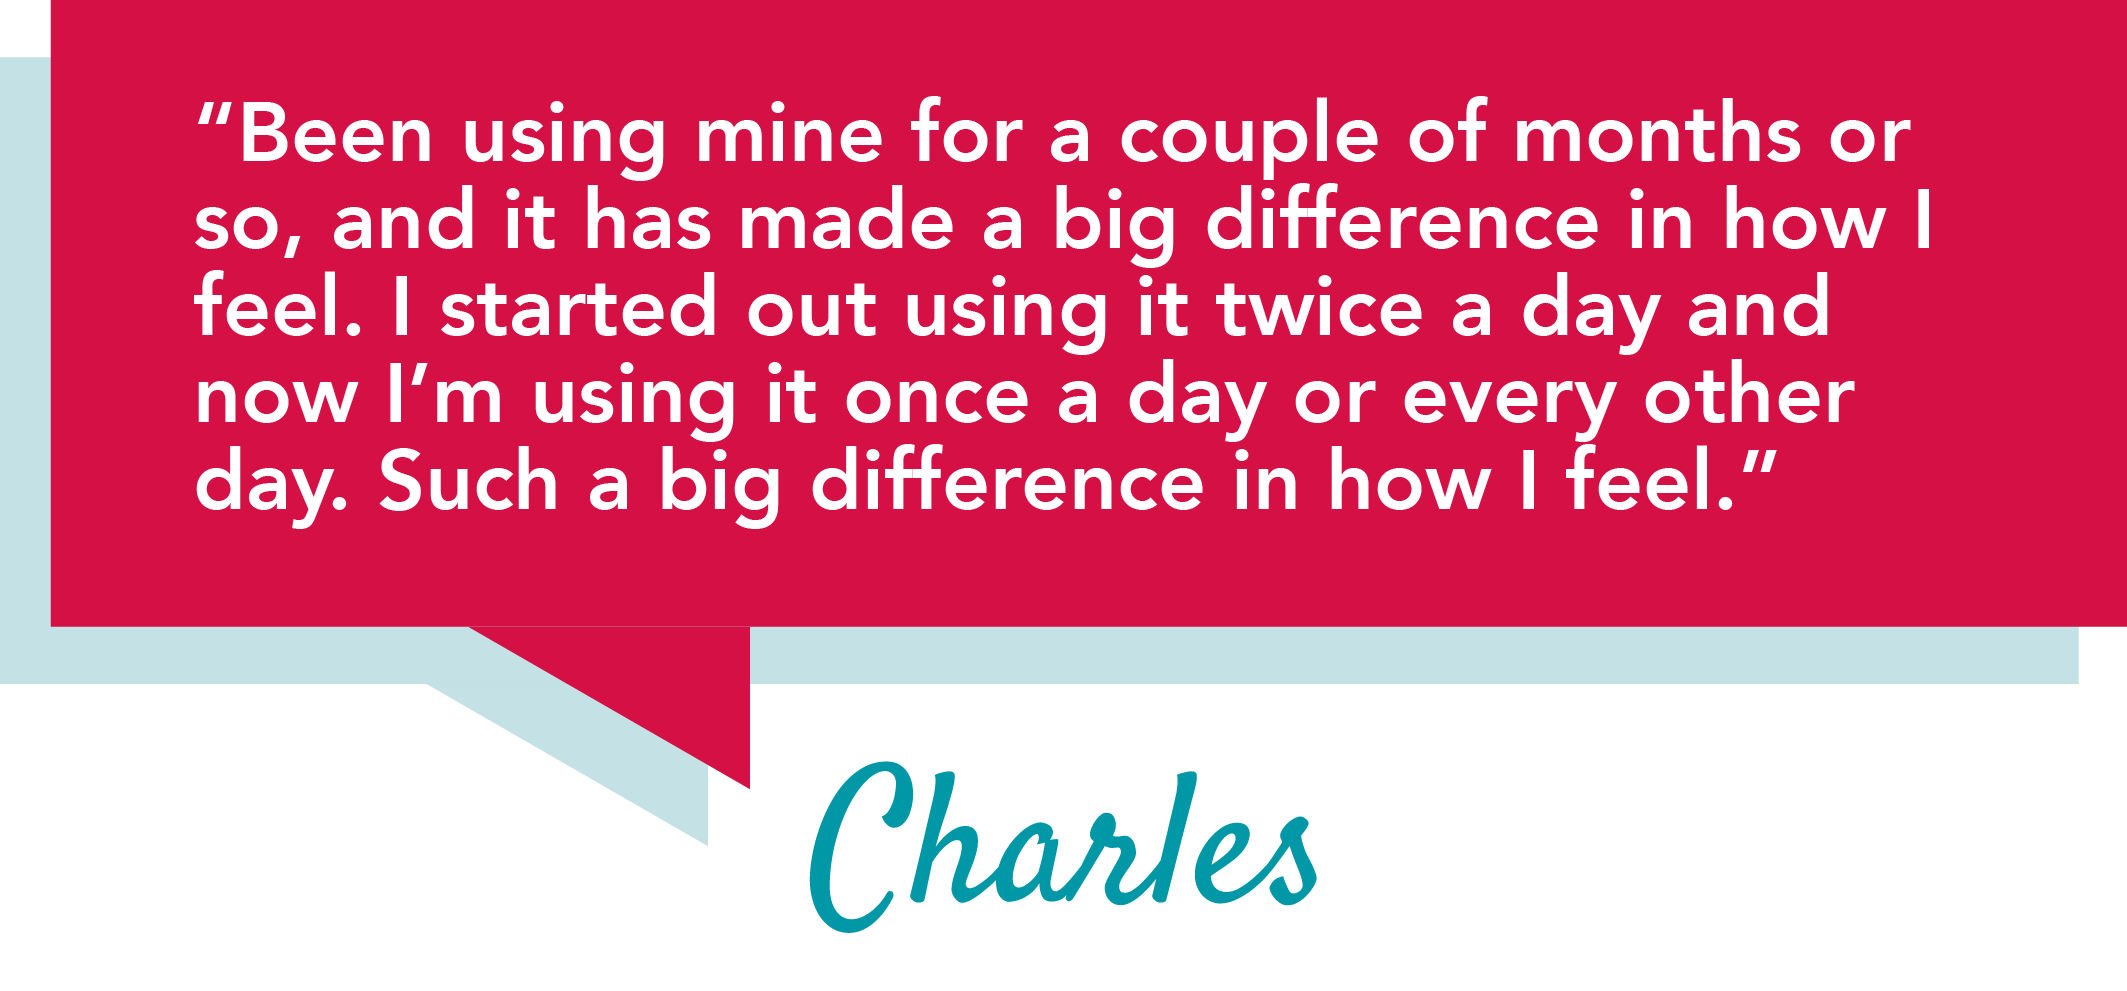 Testimonial from Charles, SmartVest User